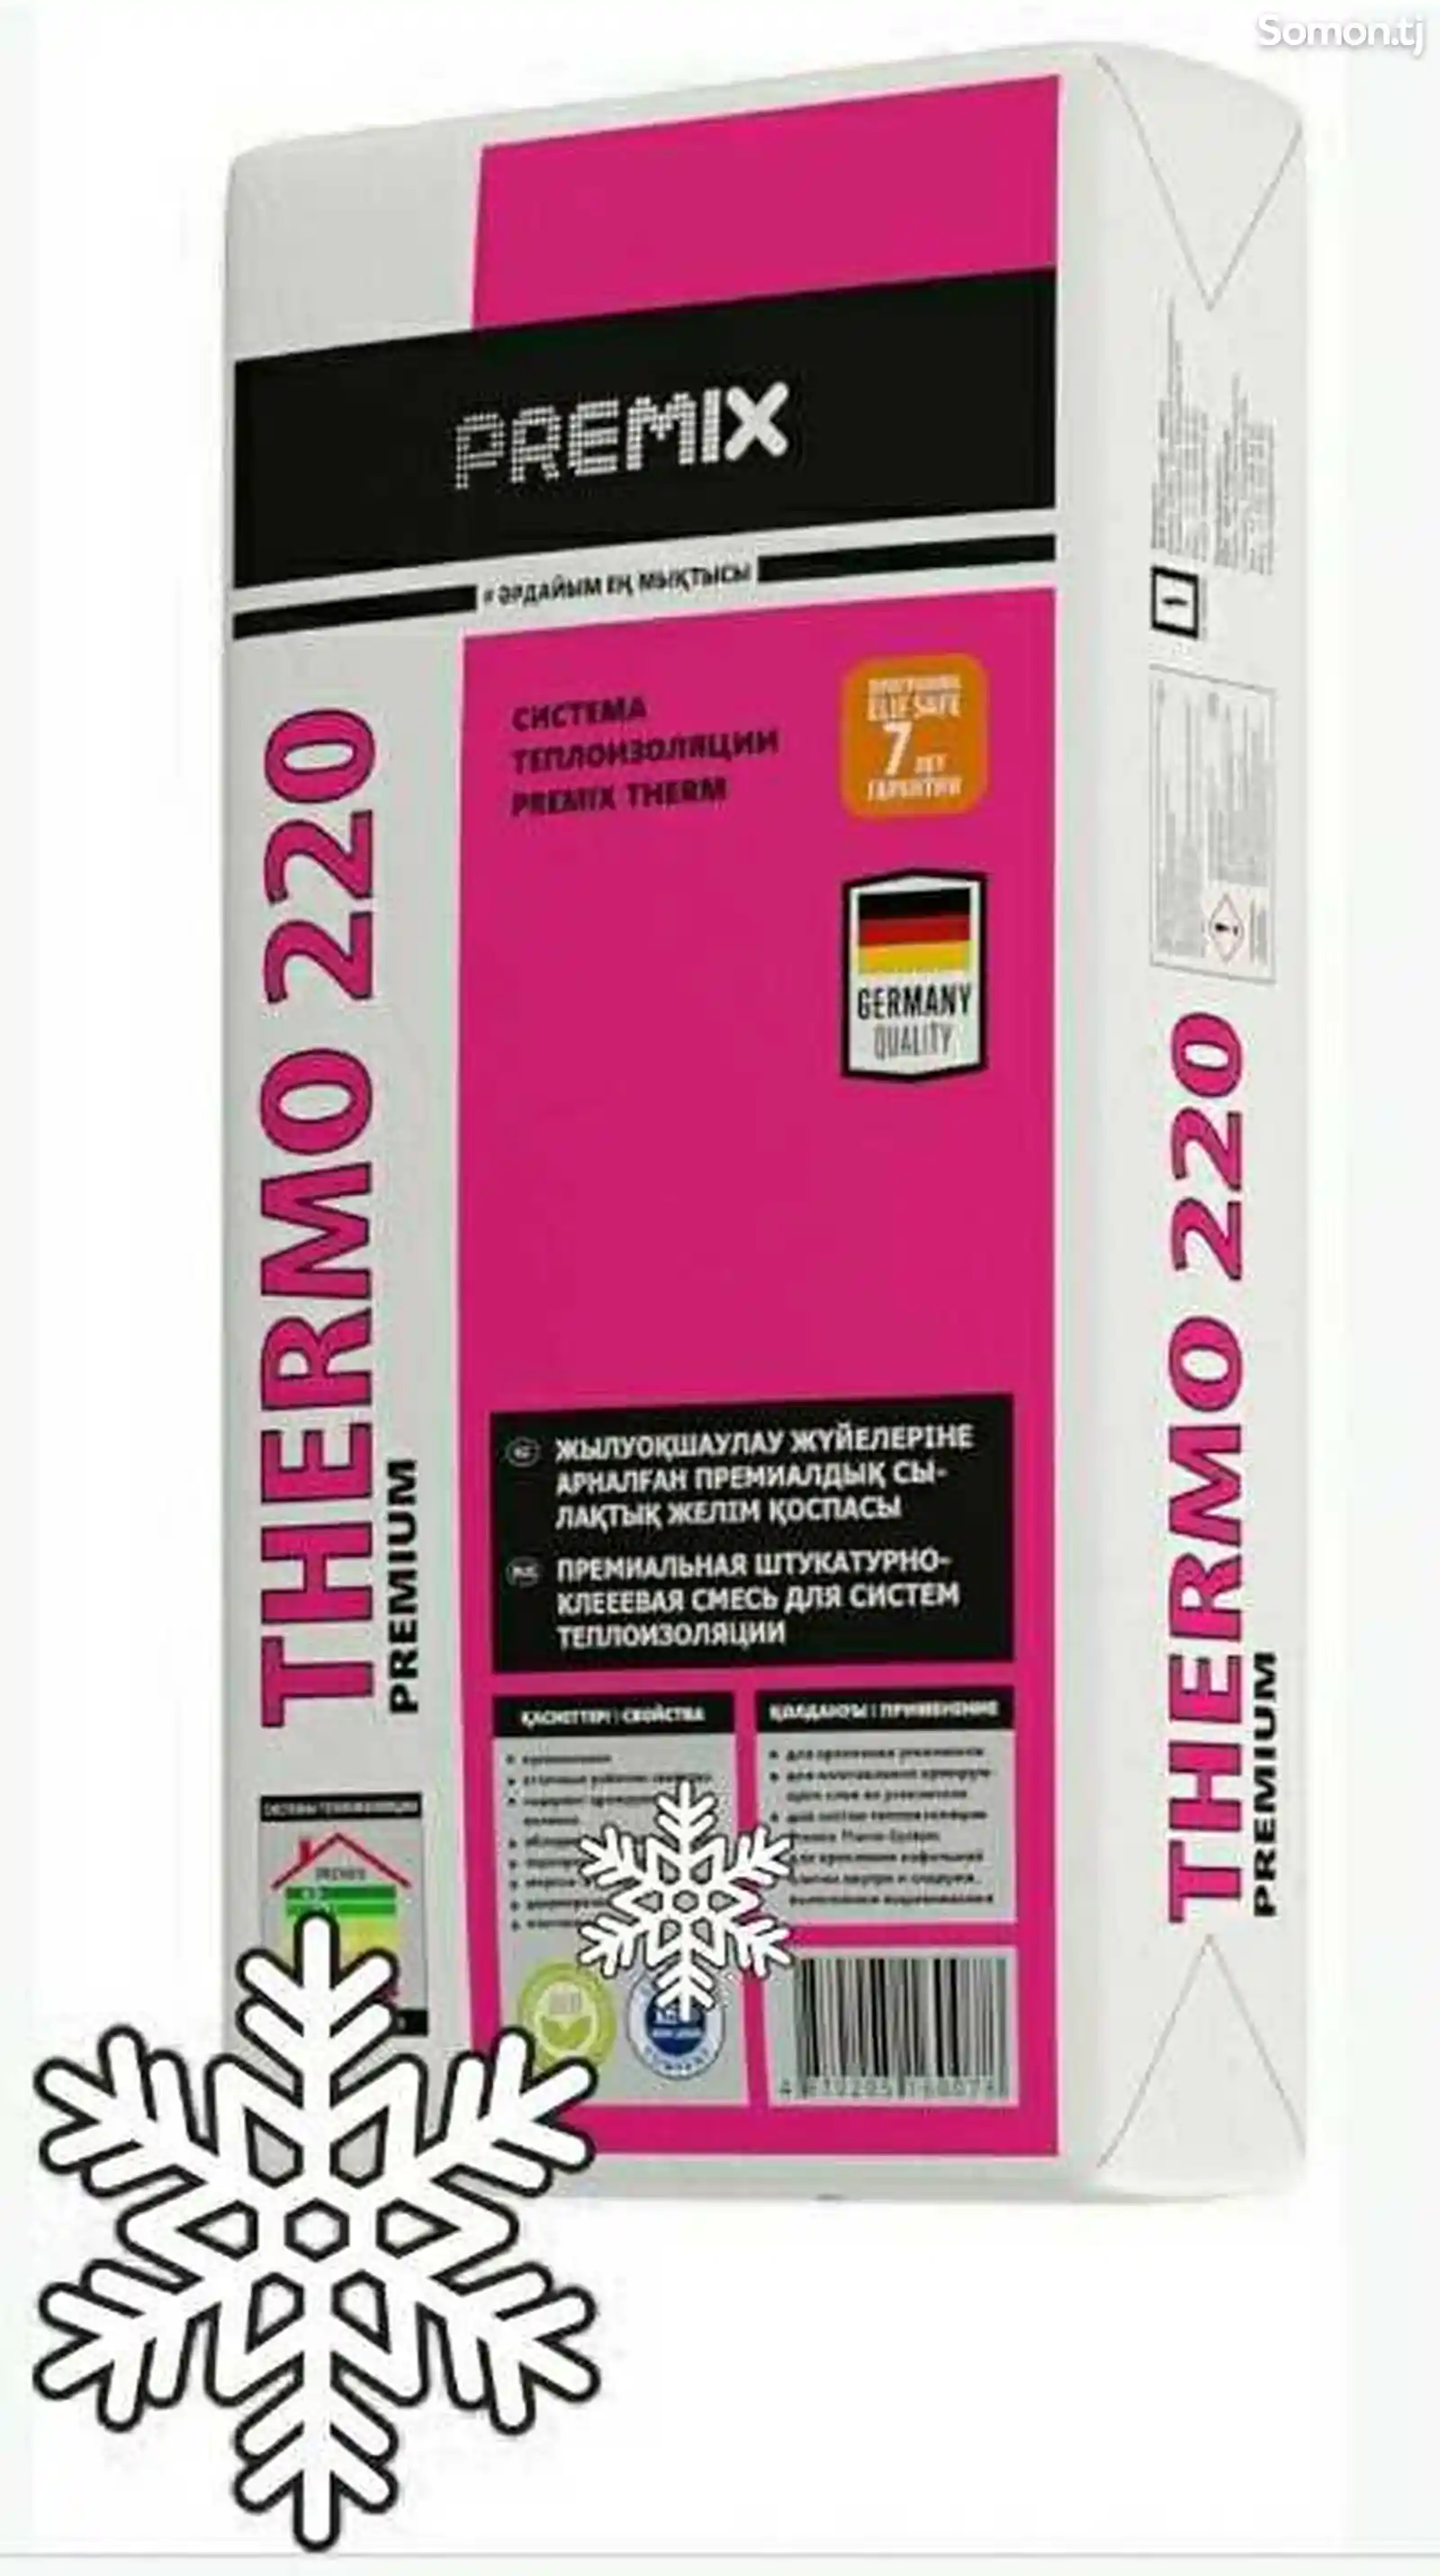 Штукатурно клеевая смесь для систем теплоизоляции Thermo 220 Premium на заказ